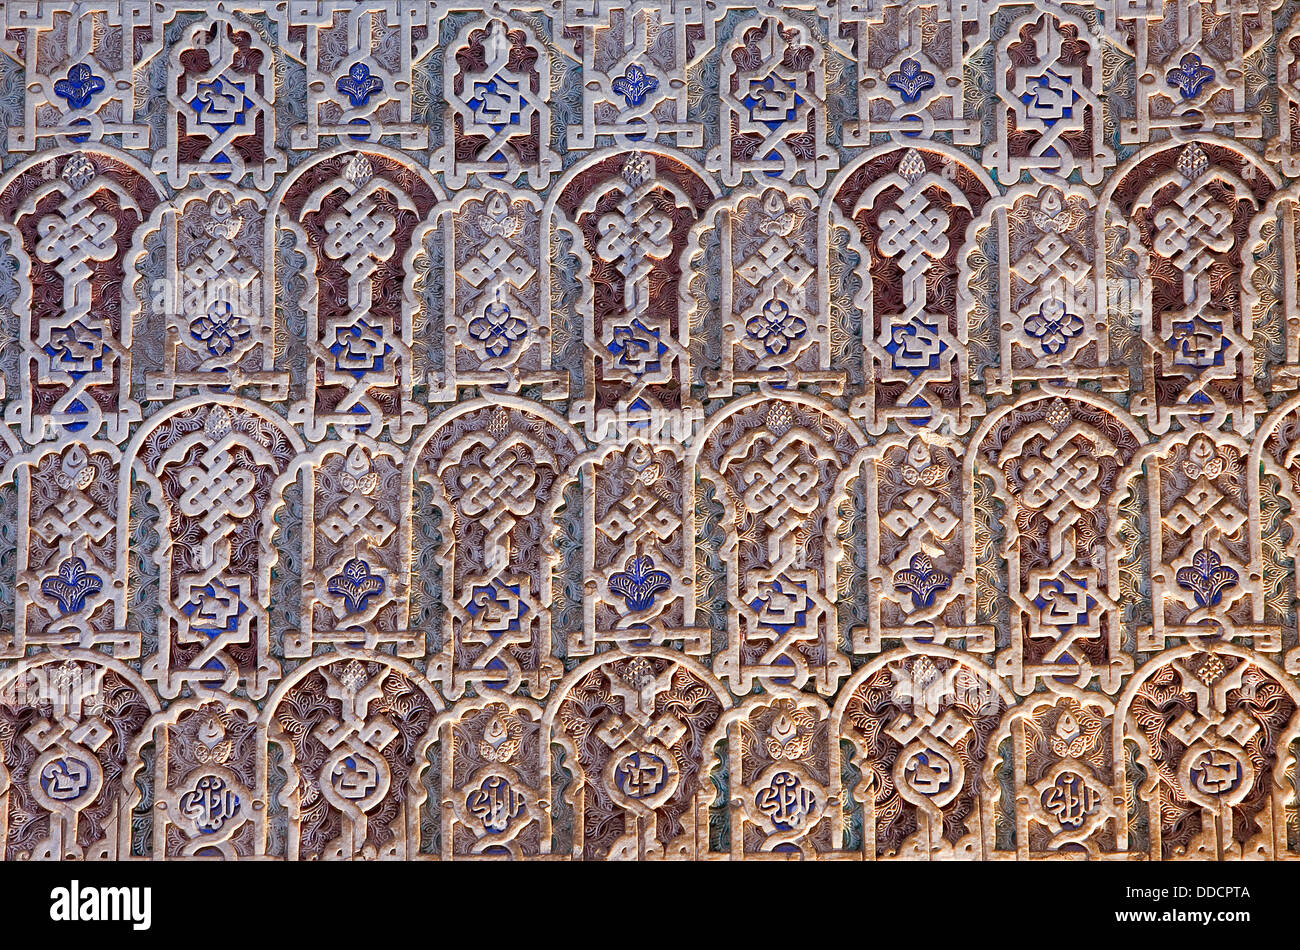 Detail der Wände in der Halle der Botschafter oder Thron Hall, Comares Palast, Nazaries Paläste, Alhambra, Granada, Andalusien, Spanien Stockfoto